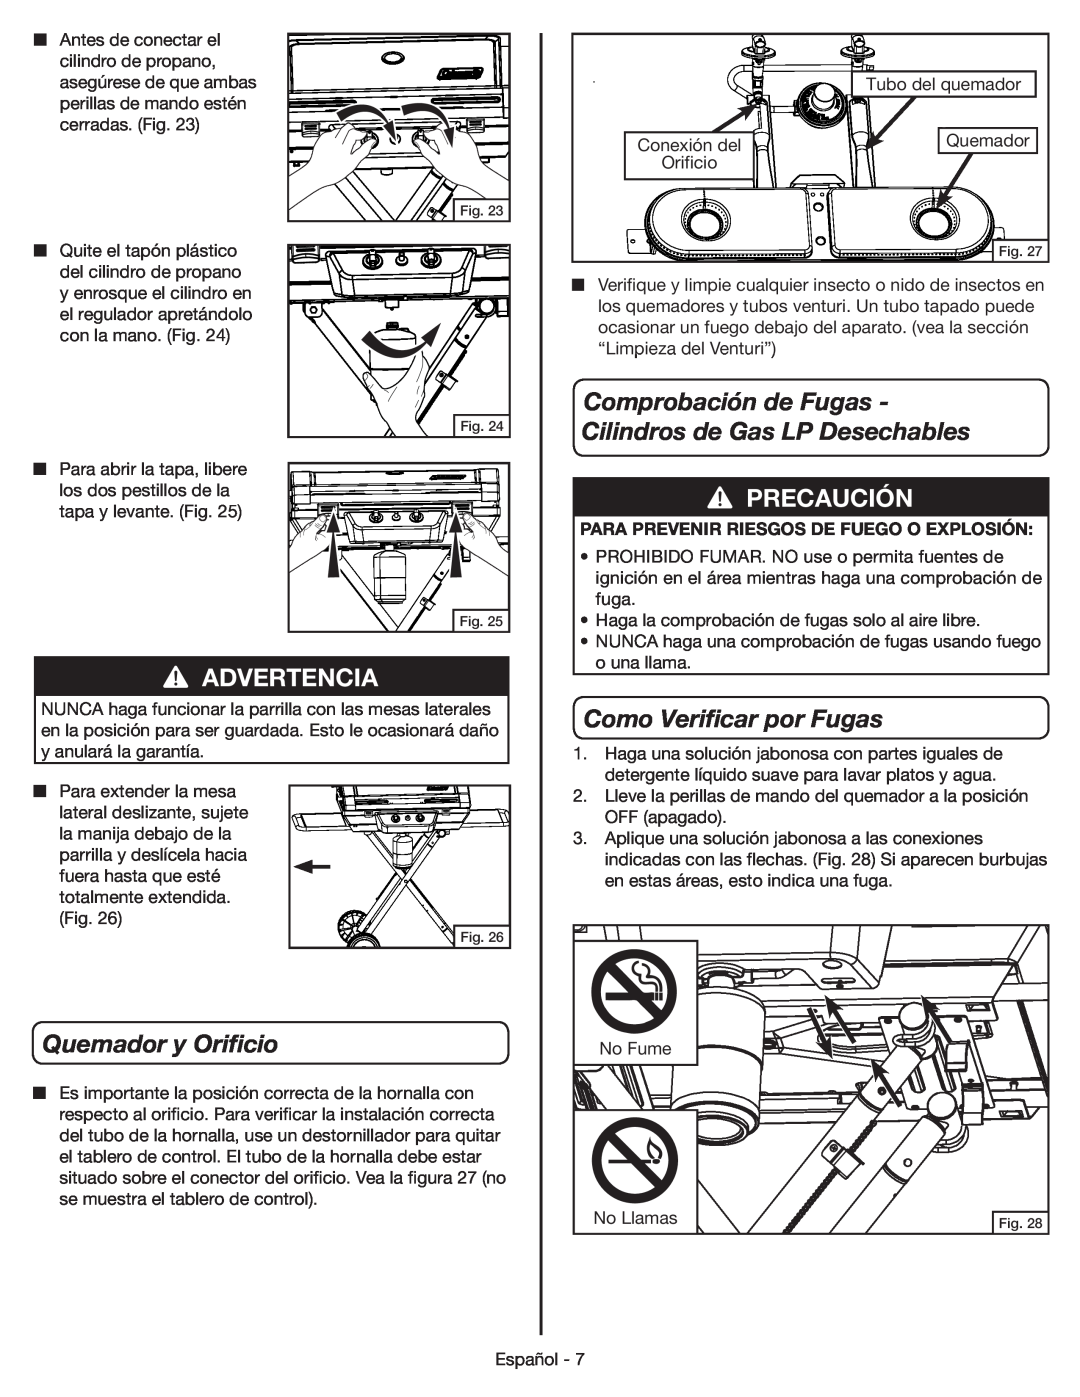 Coleman 9959 manual Quemador y Orificio, Como Verificar por Fugas, Comprobación de Fugas - Cilindros de Gas LP Desechables 